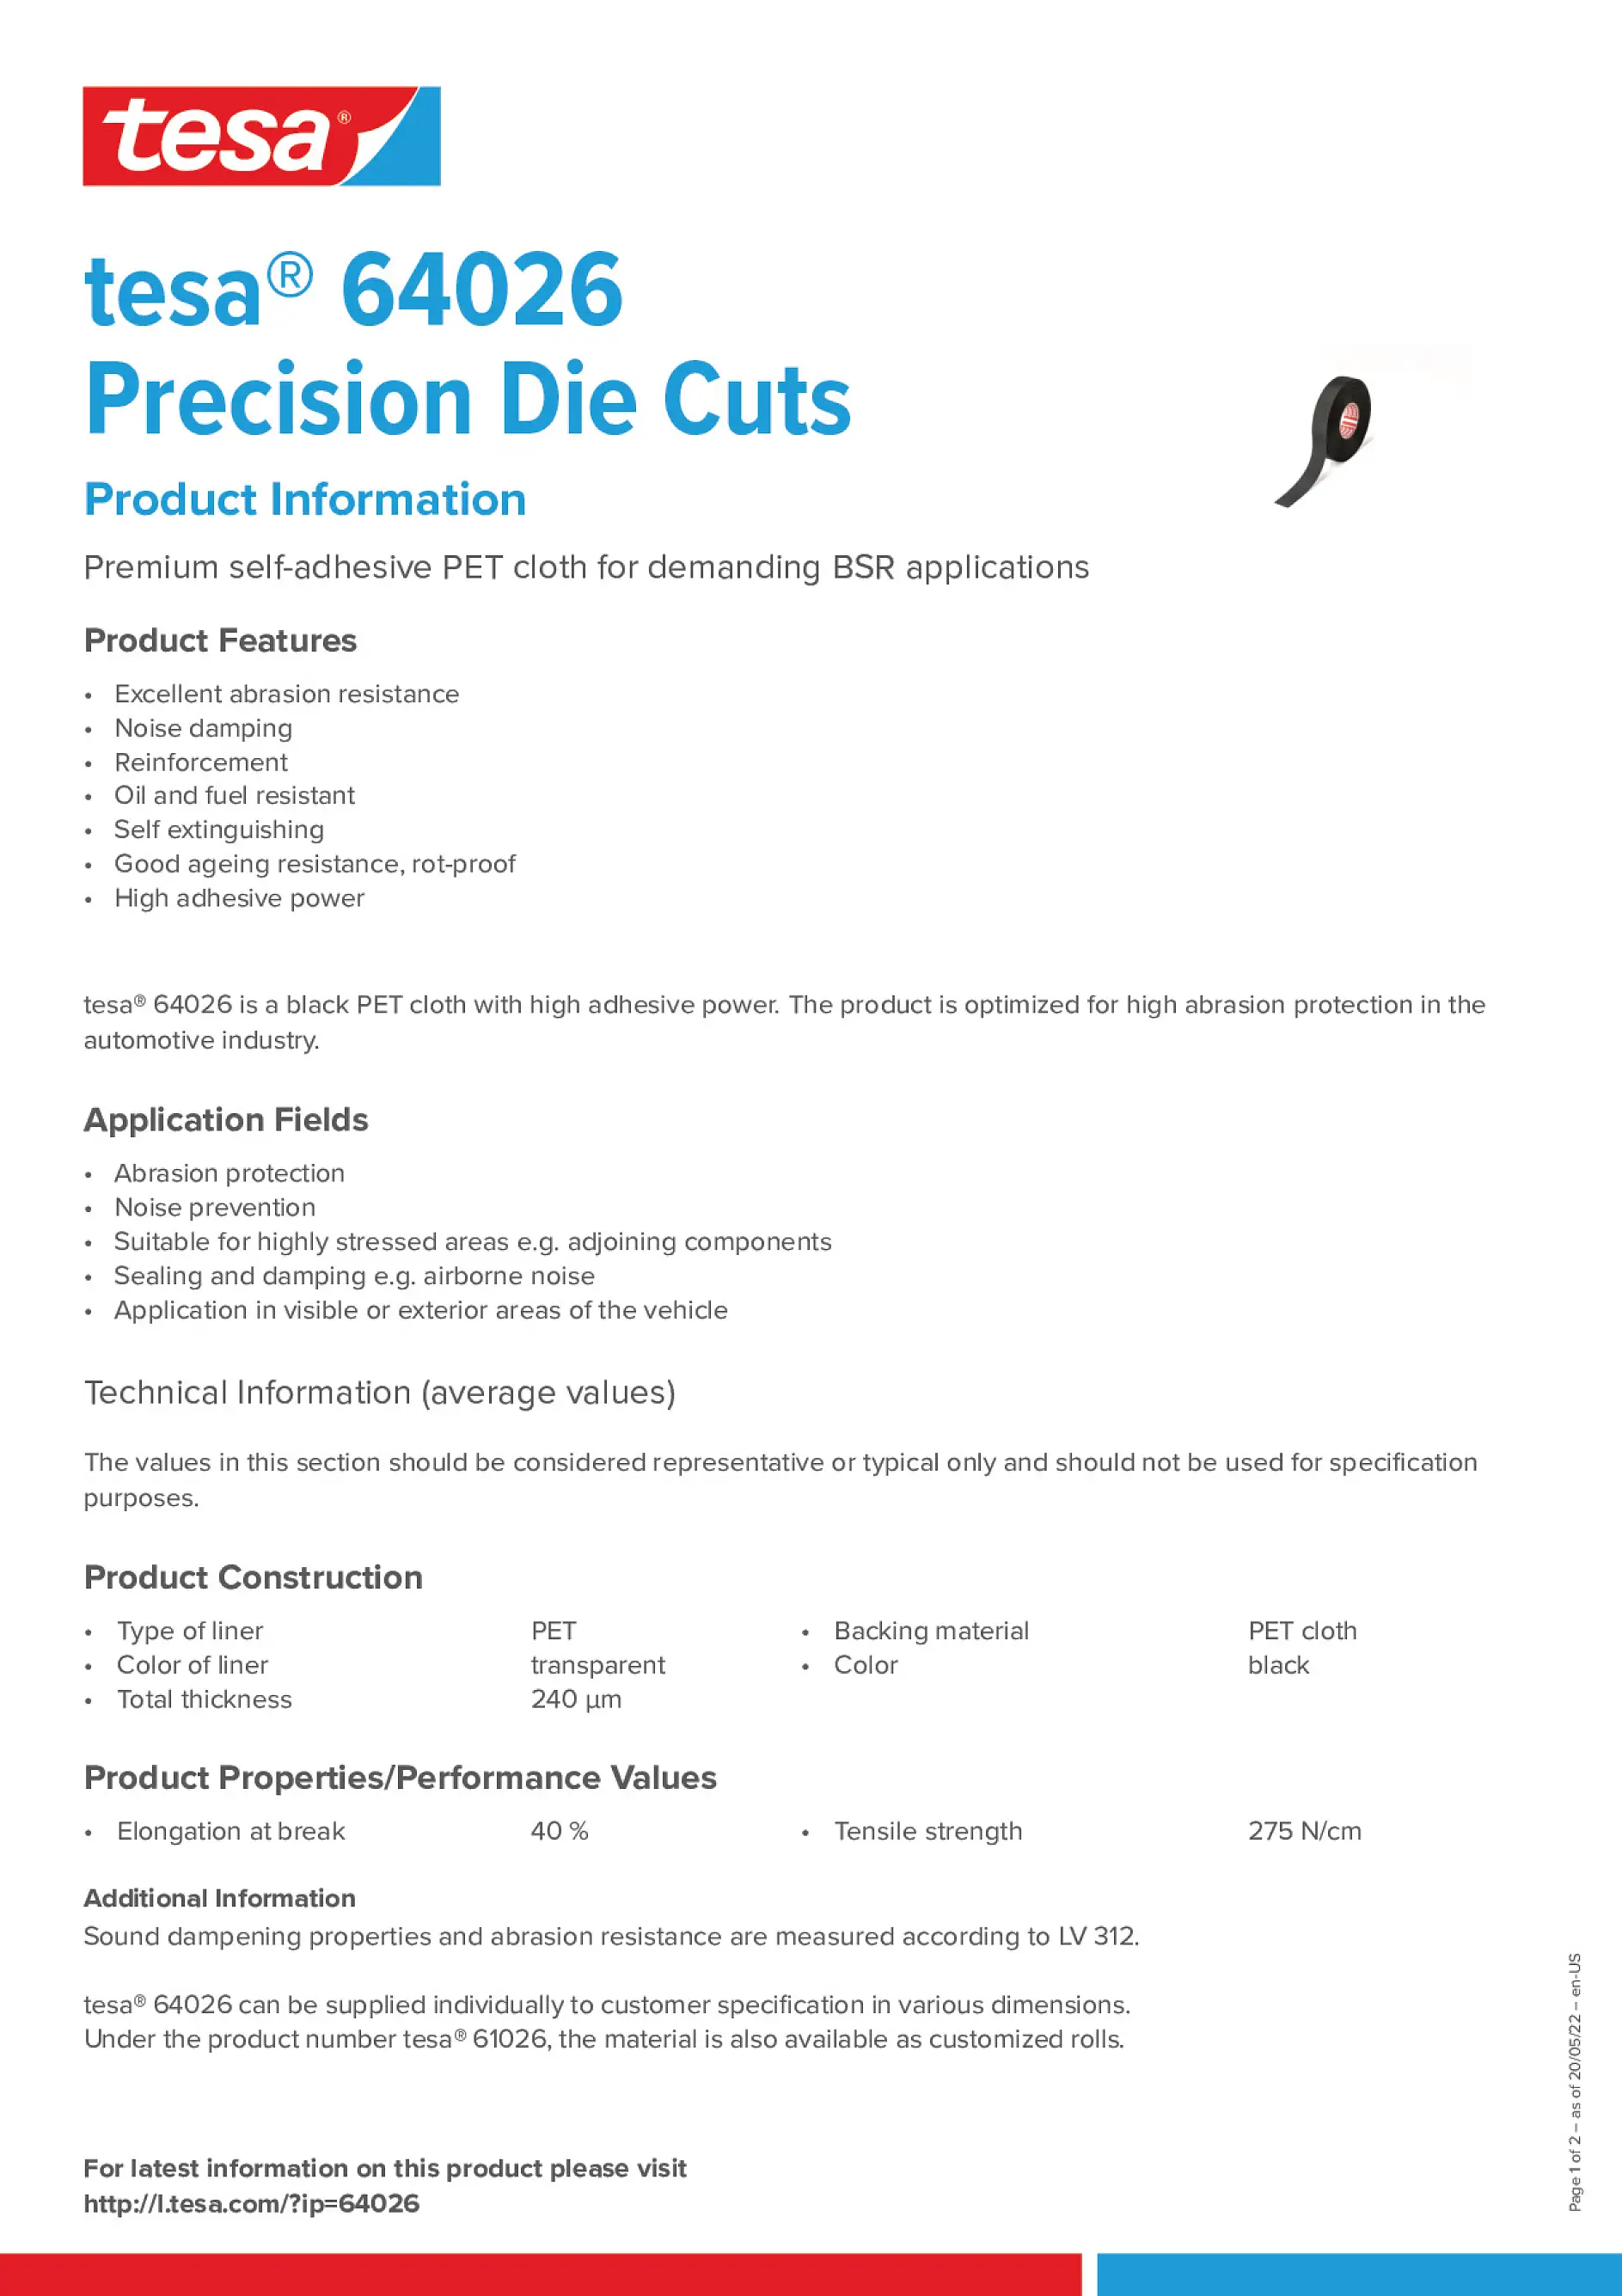 tesa_64026_Precision_Die_Cuts_en-US